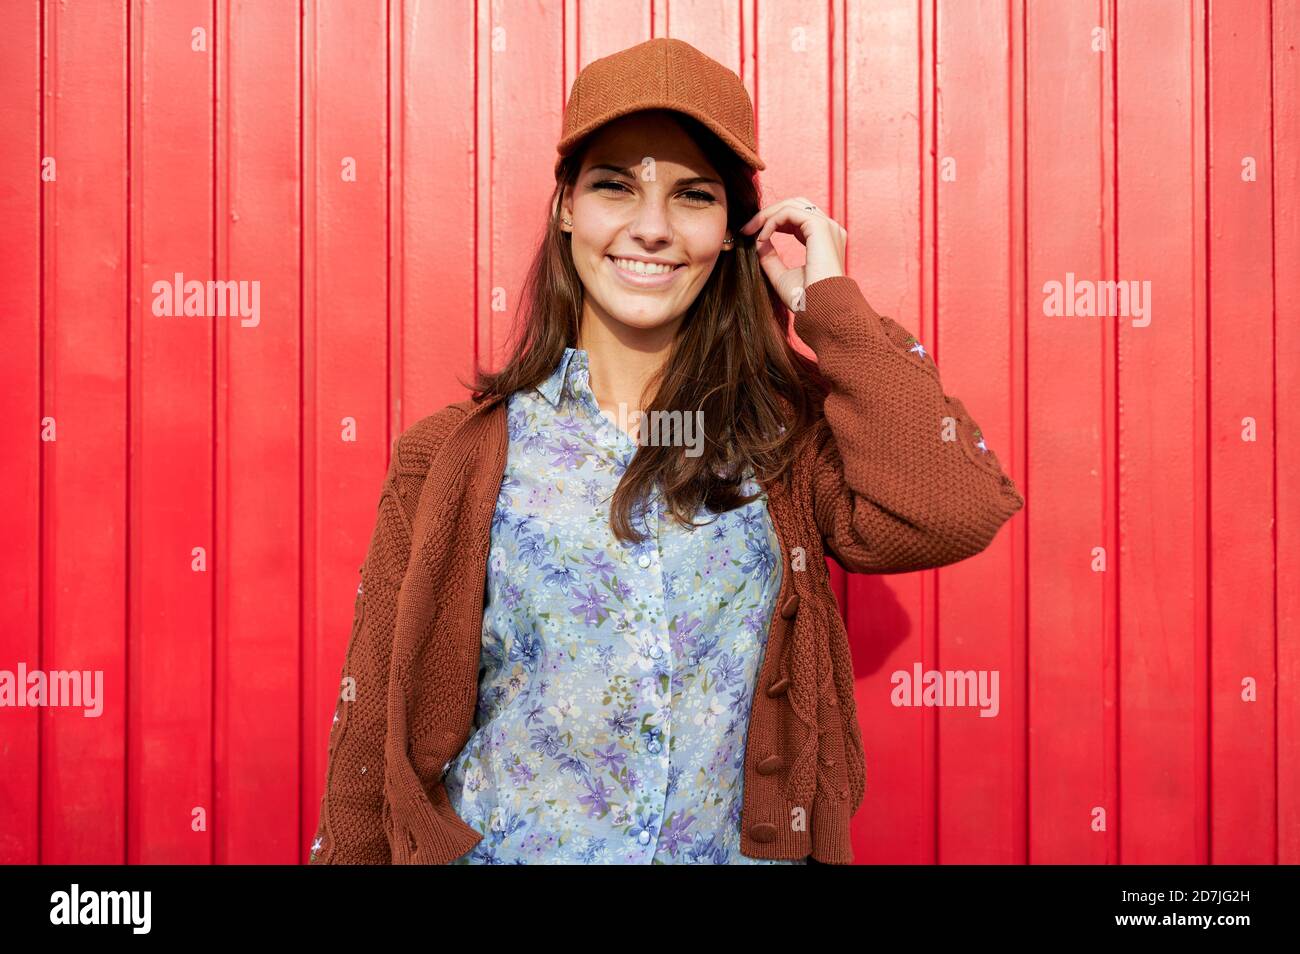 Femme souriante avec un chapeau debout contre une porte en métal rouge Banque D'Images